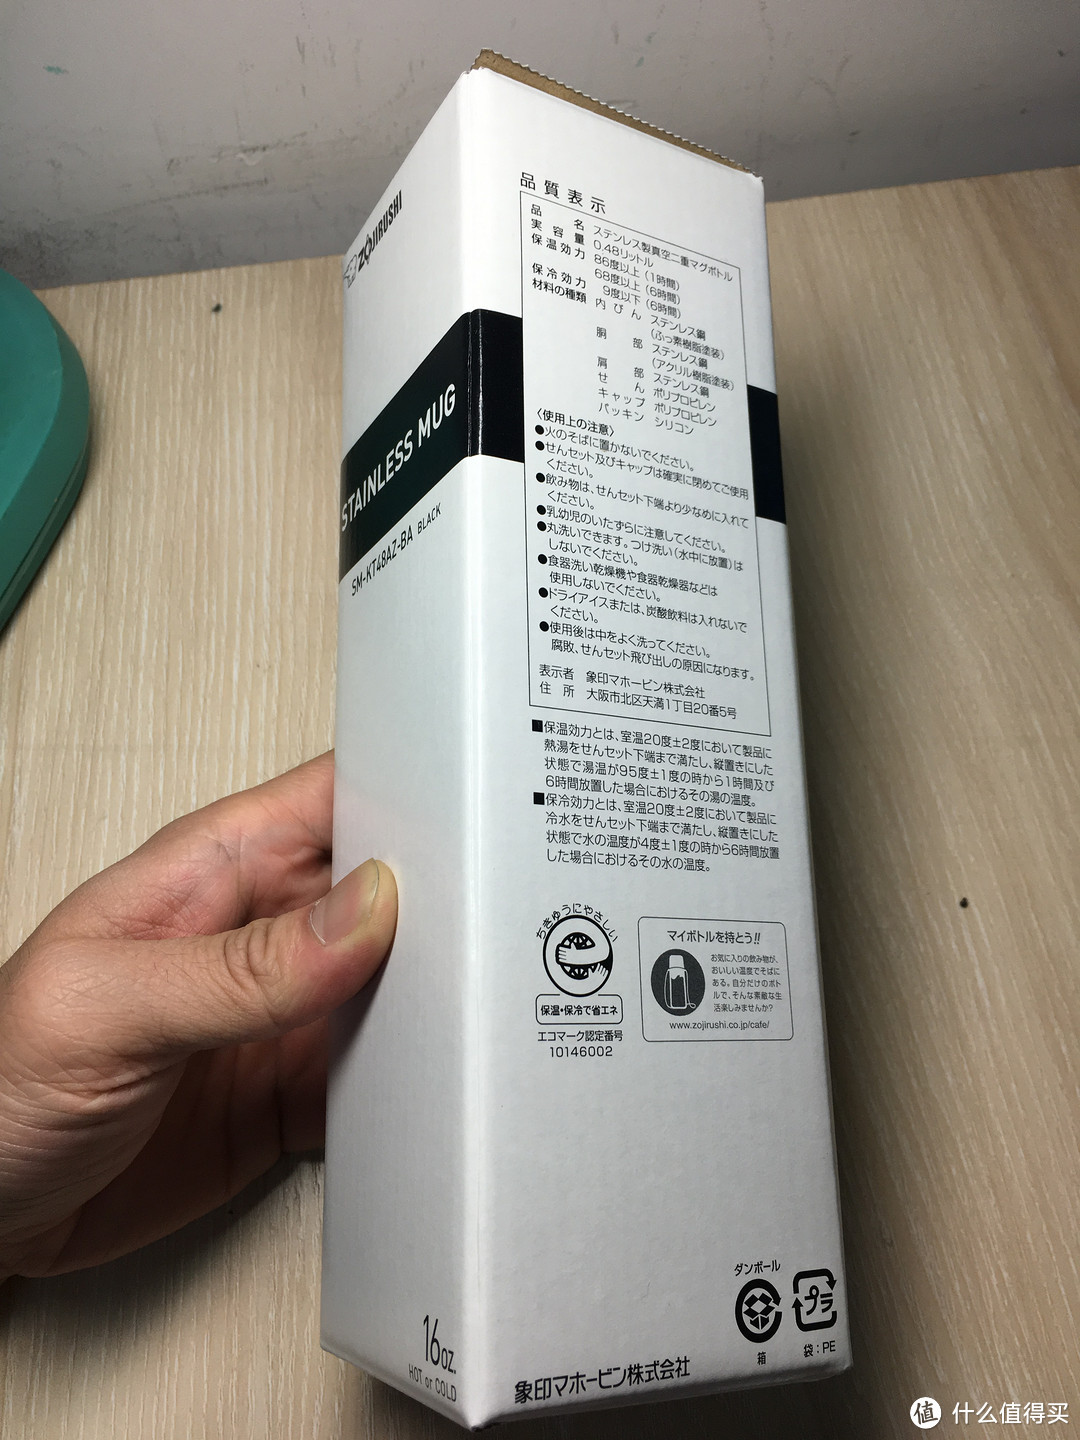 ZOJIRUSHI 象印 SM-KT48-AZ 不锈钢保温杯 日亚限定款 480ml 开箱简评